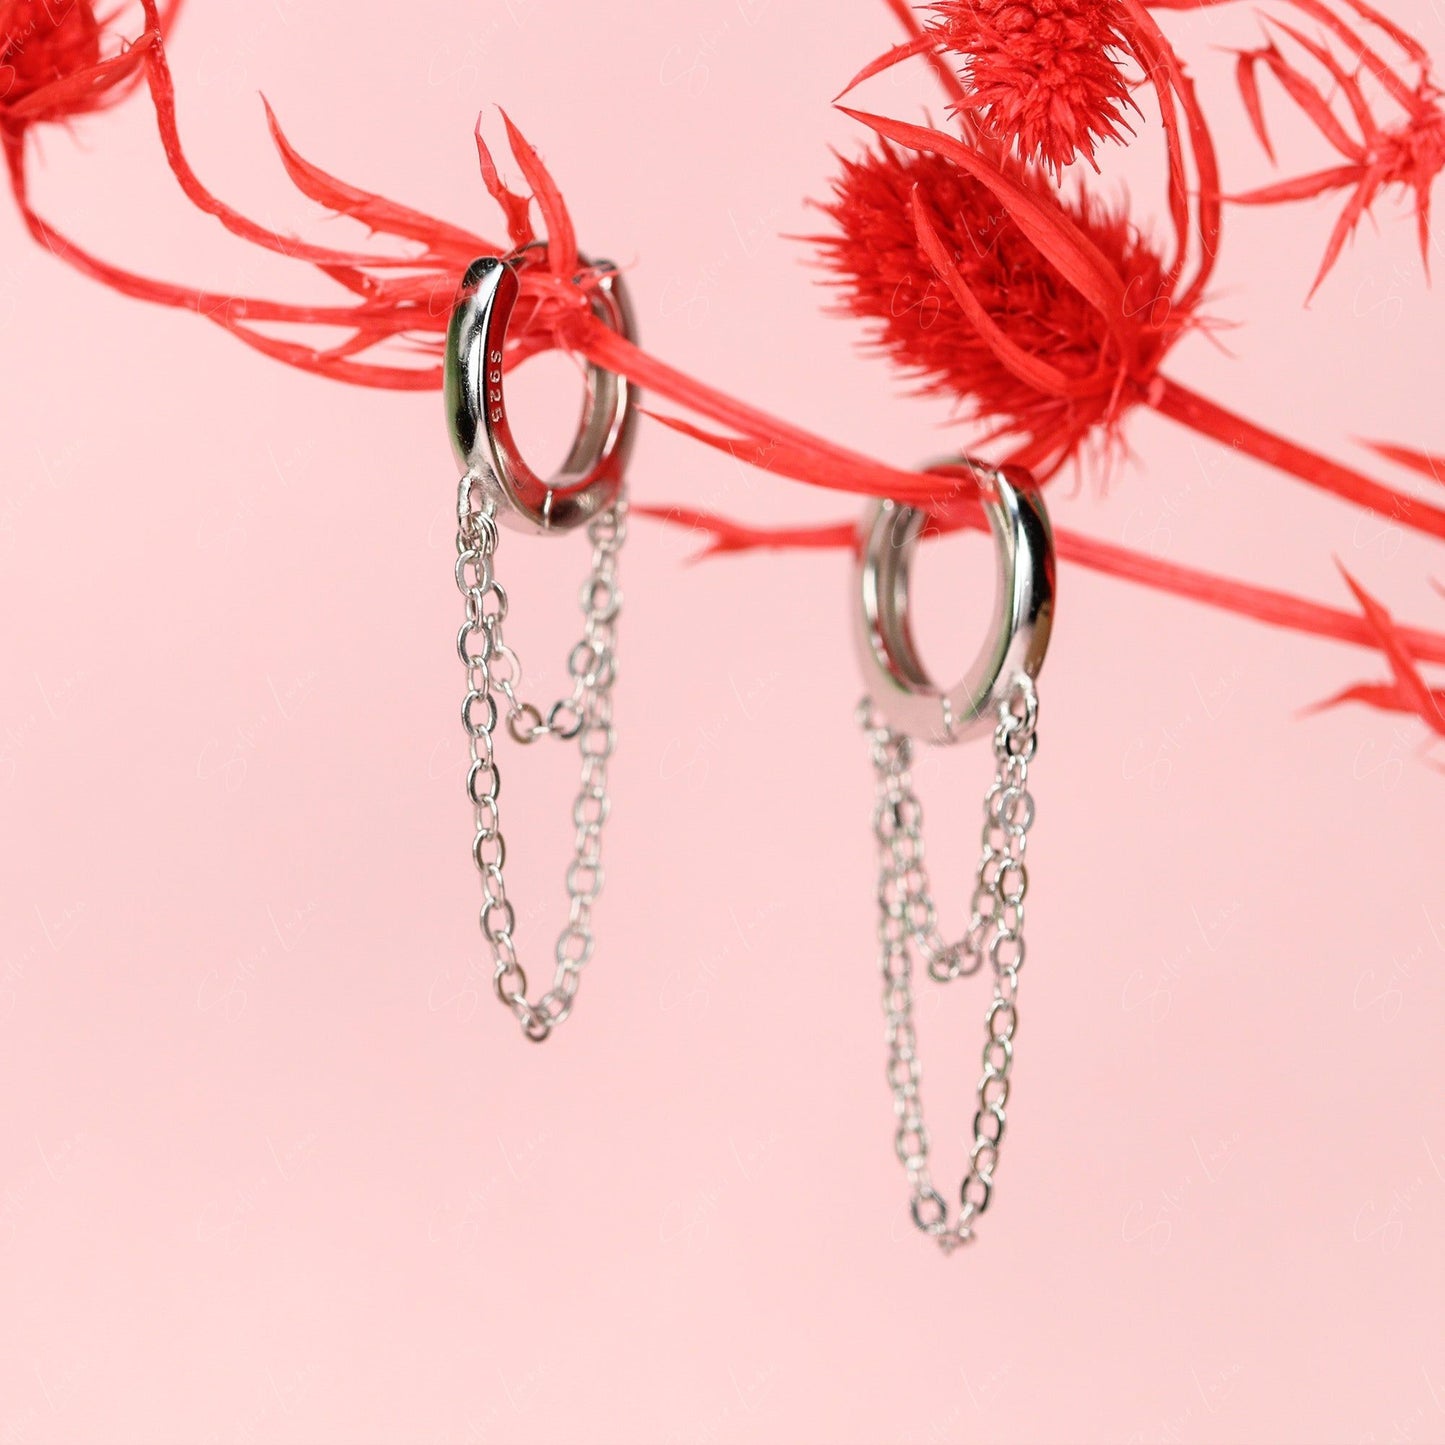 hoop earrings with chain